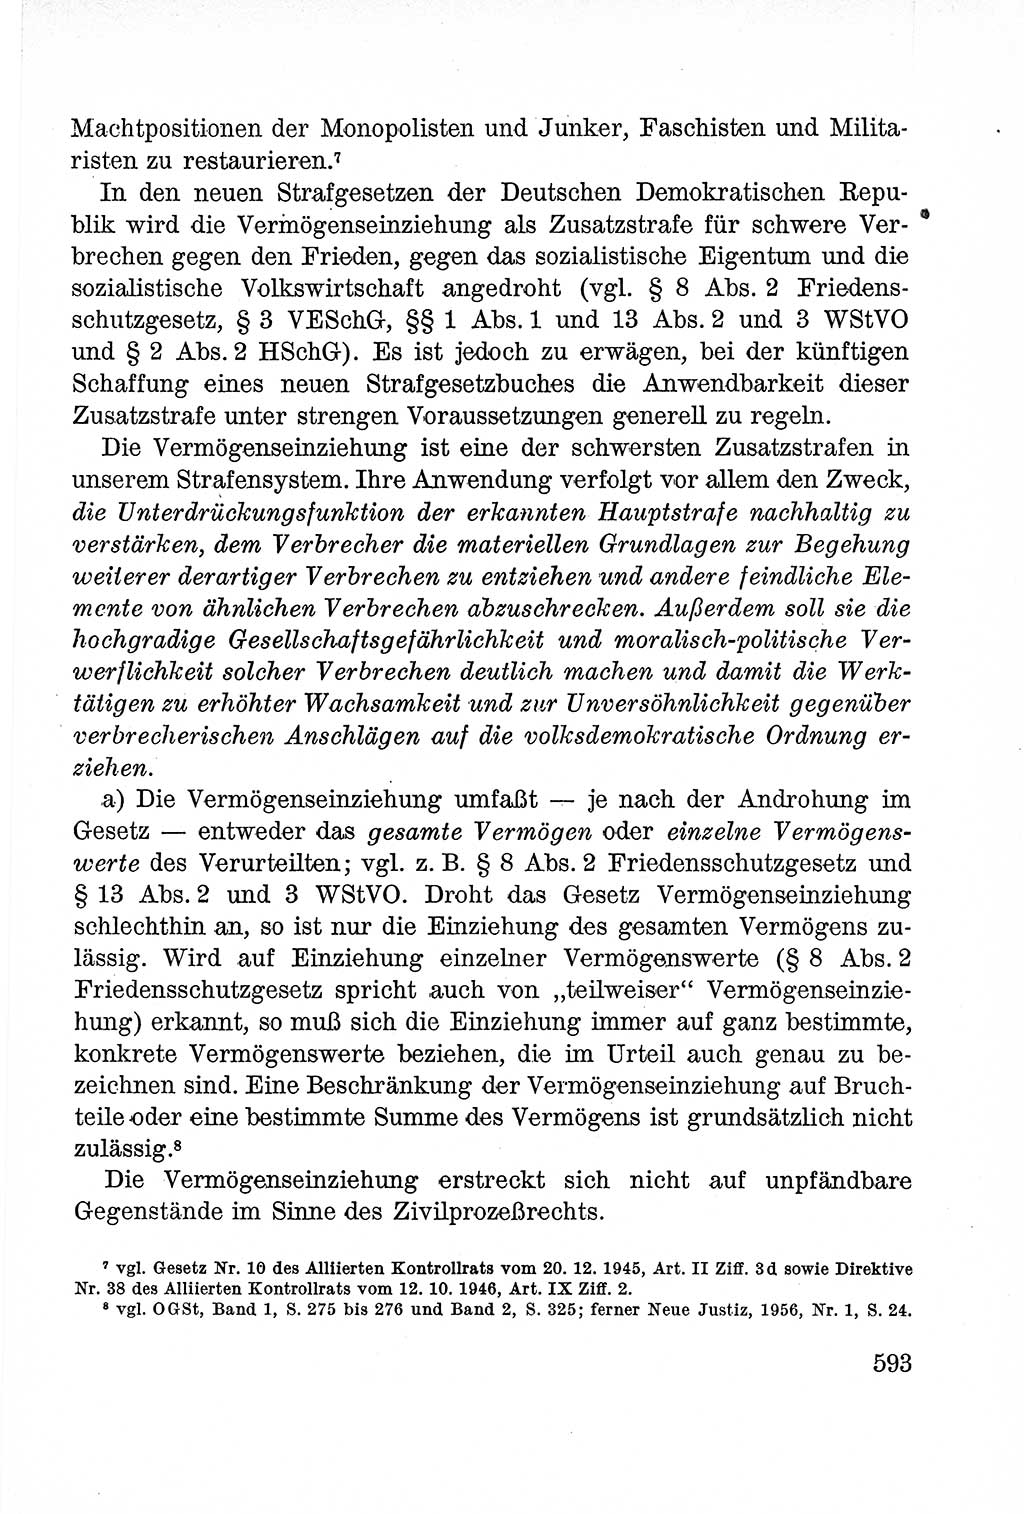 Lehrbuch des Strafrechts der Deutschen Demokratischen Republik (DDR), Allgemeiner Teil 1957, Seite 593 (Lb. Strafr. DDR AT 1957, S. 593)